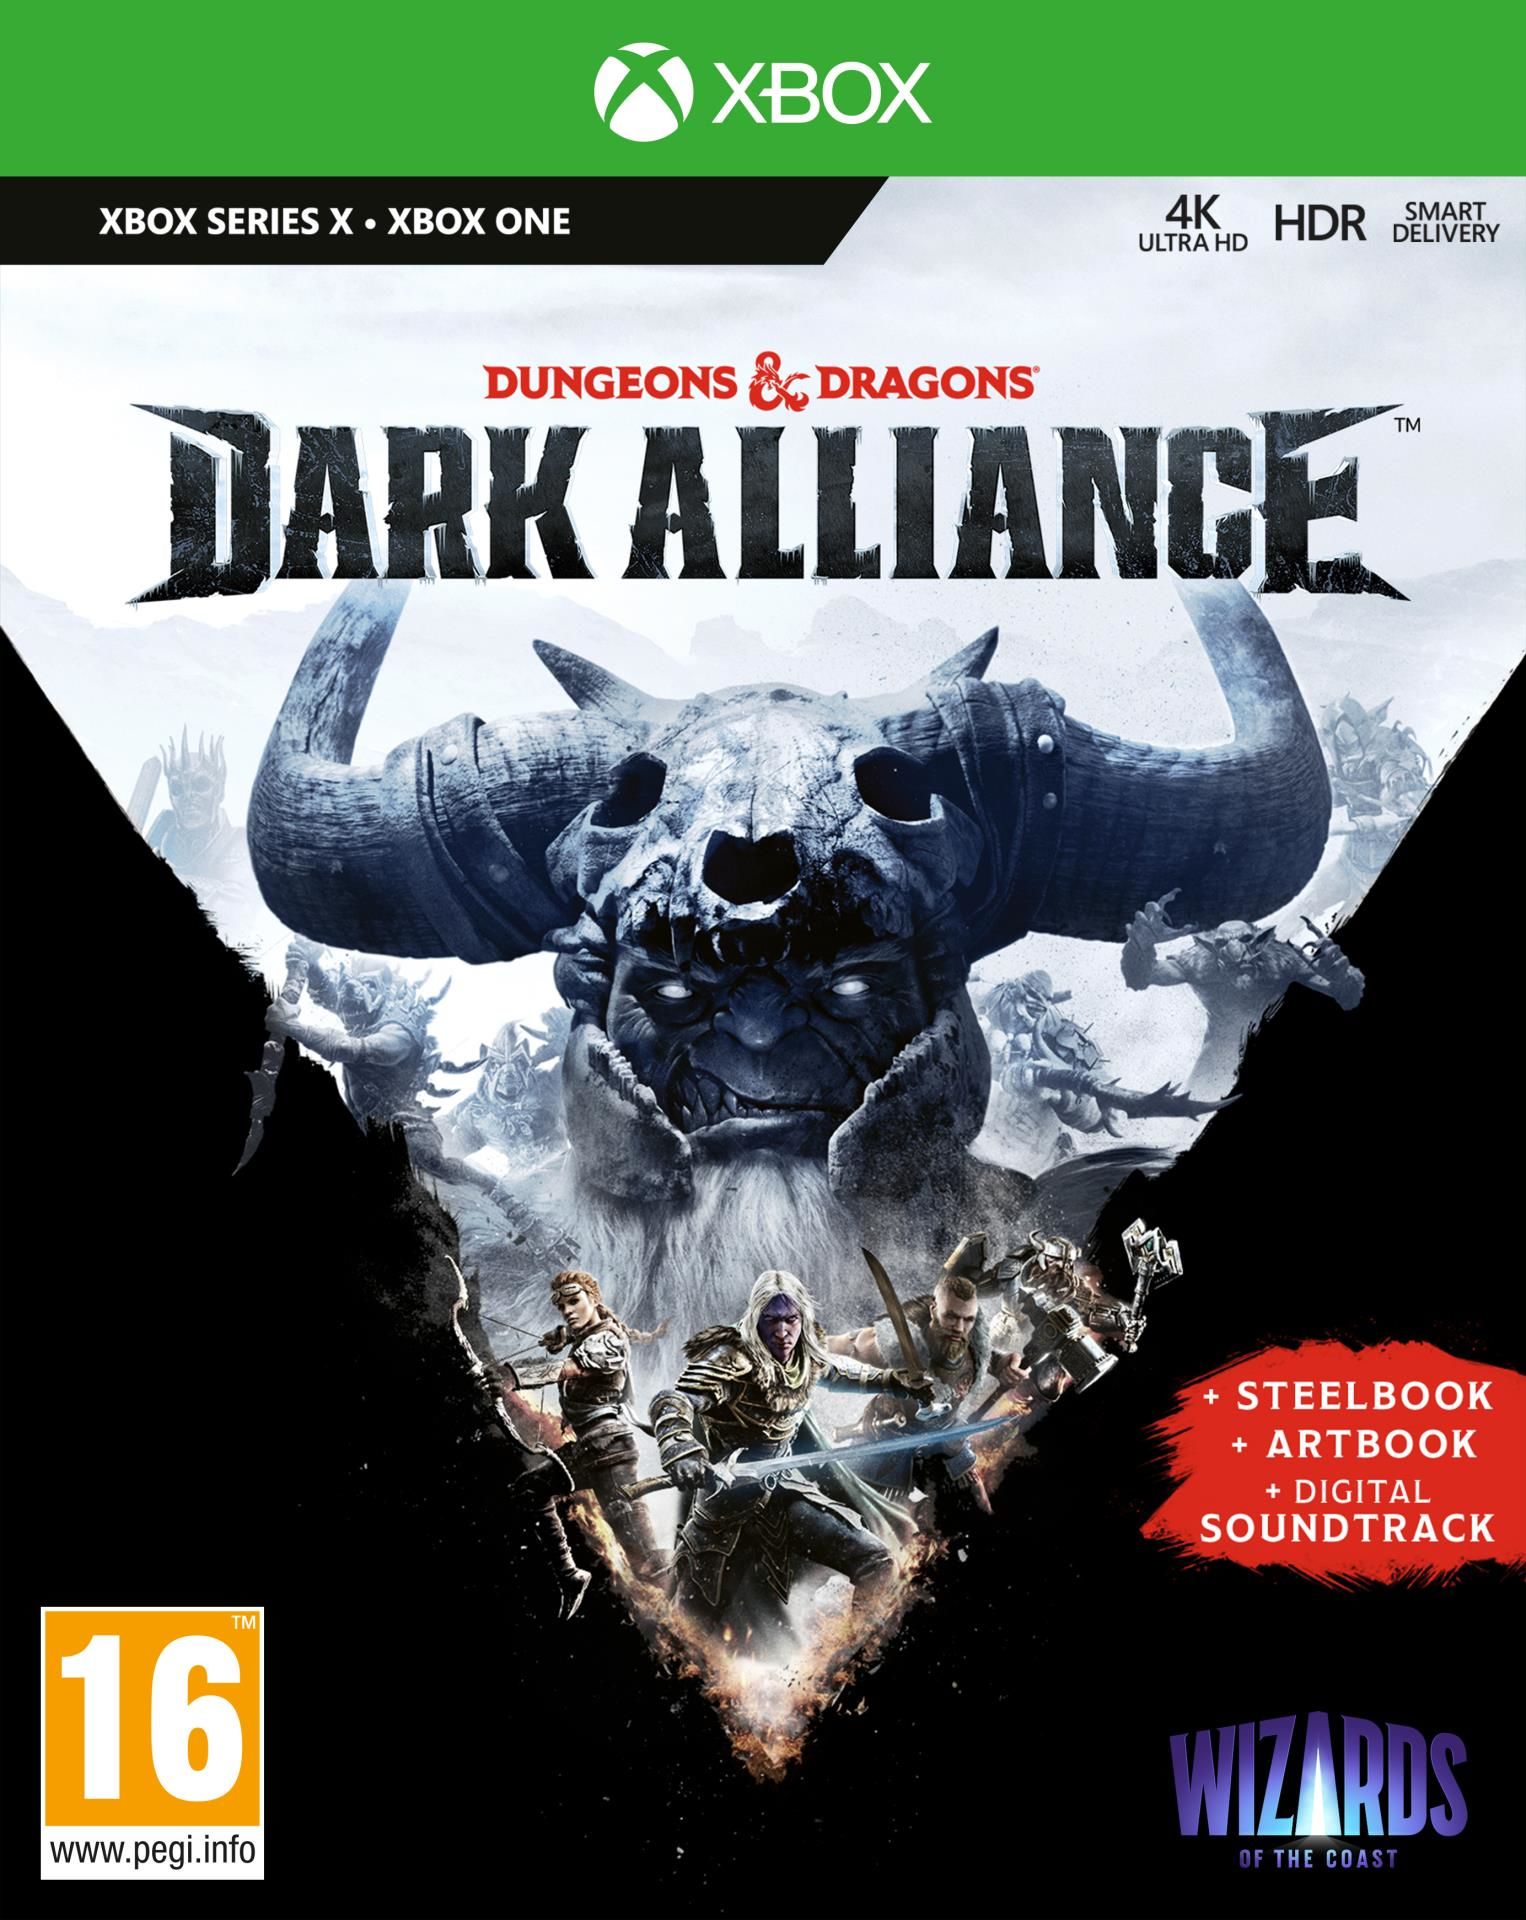 Dungeons & Dragons - Dark Alliance Steelbook Edition